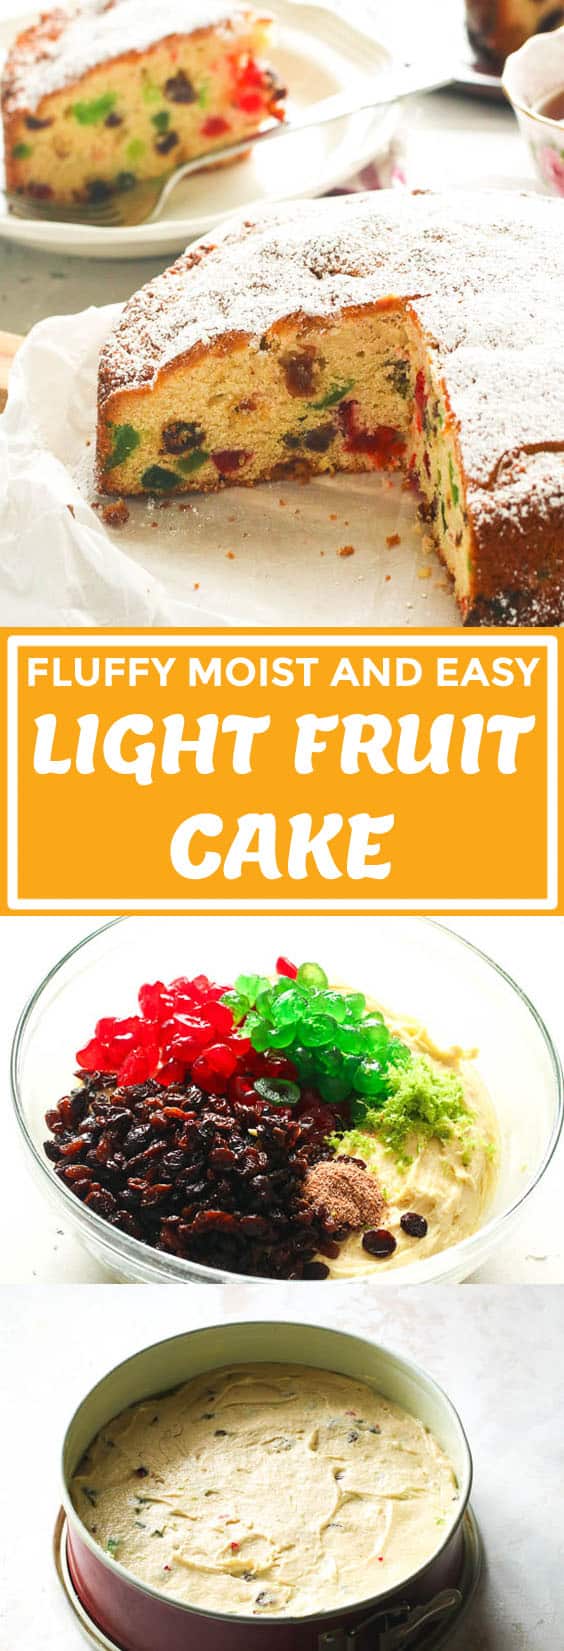 Light Fruit Cake